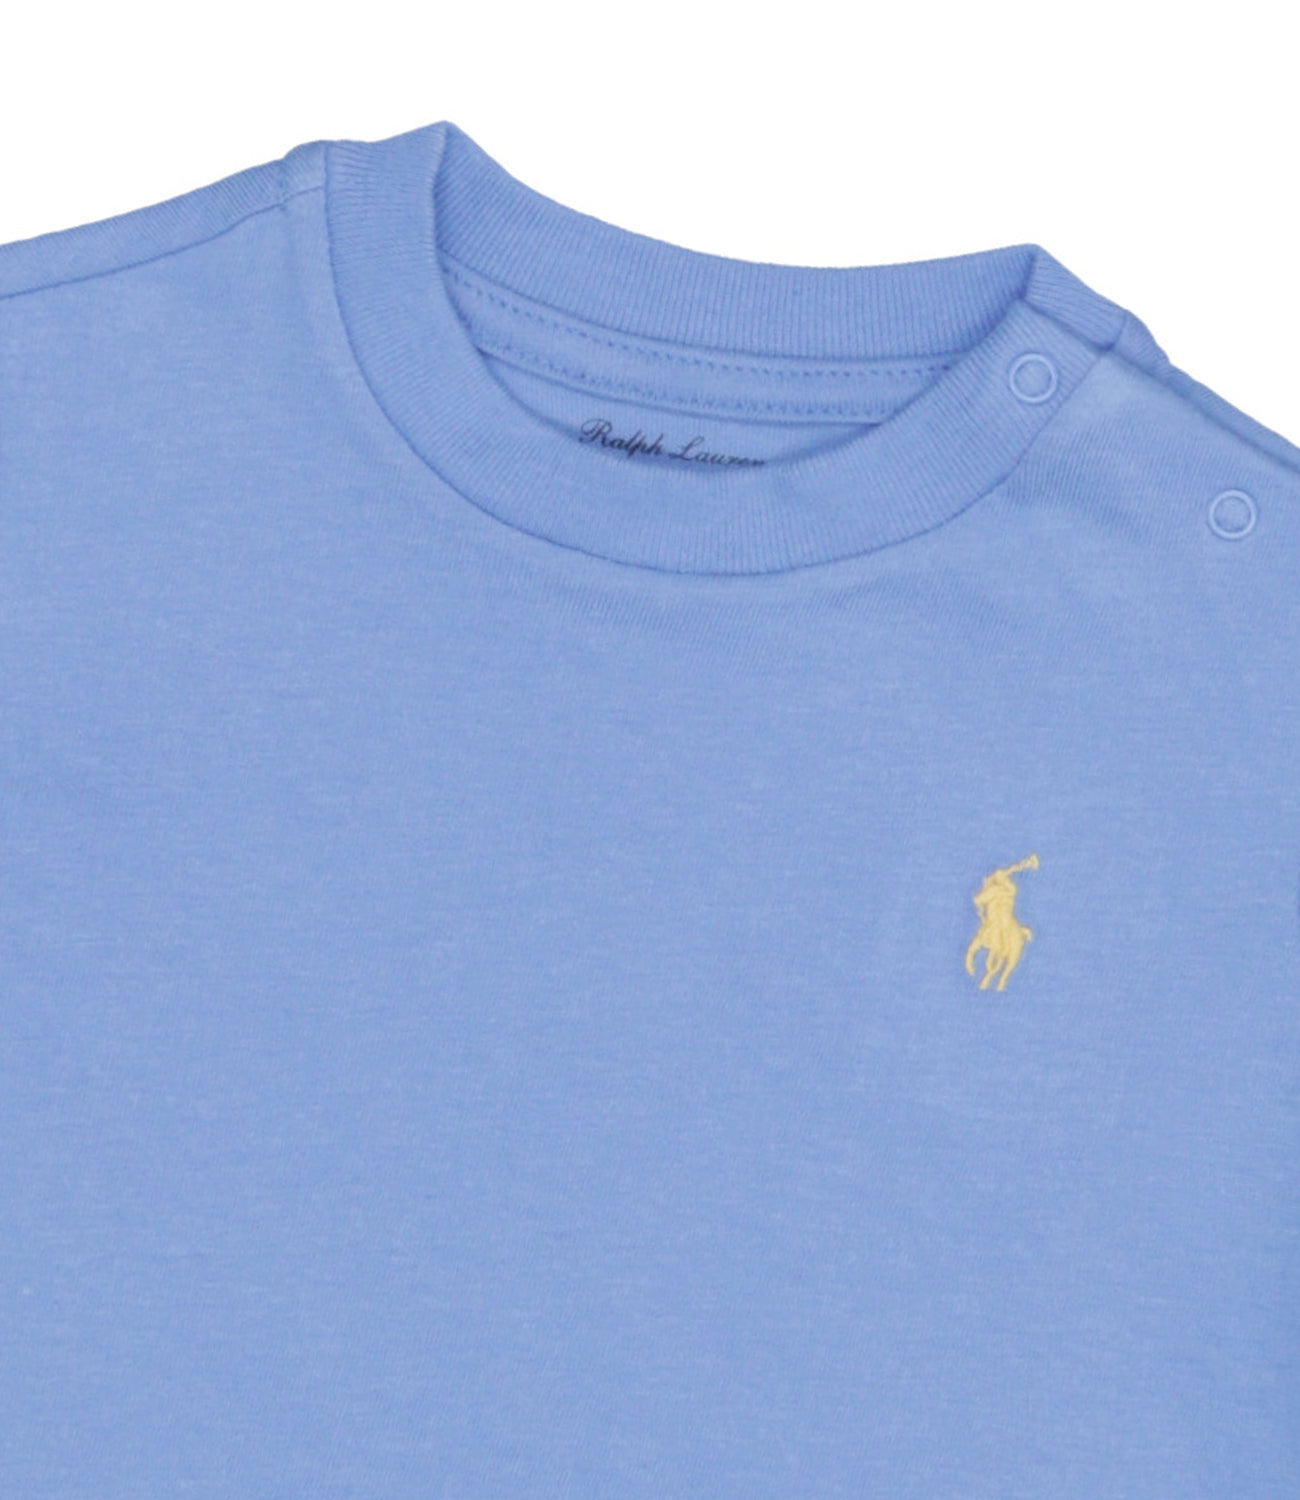 Ralph Lauren Childrenswear | T-Shirt Celeste